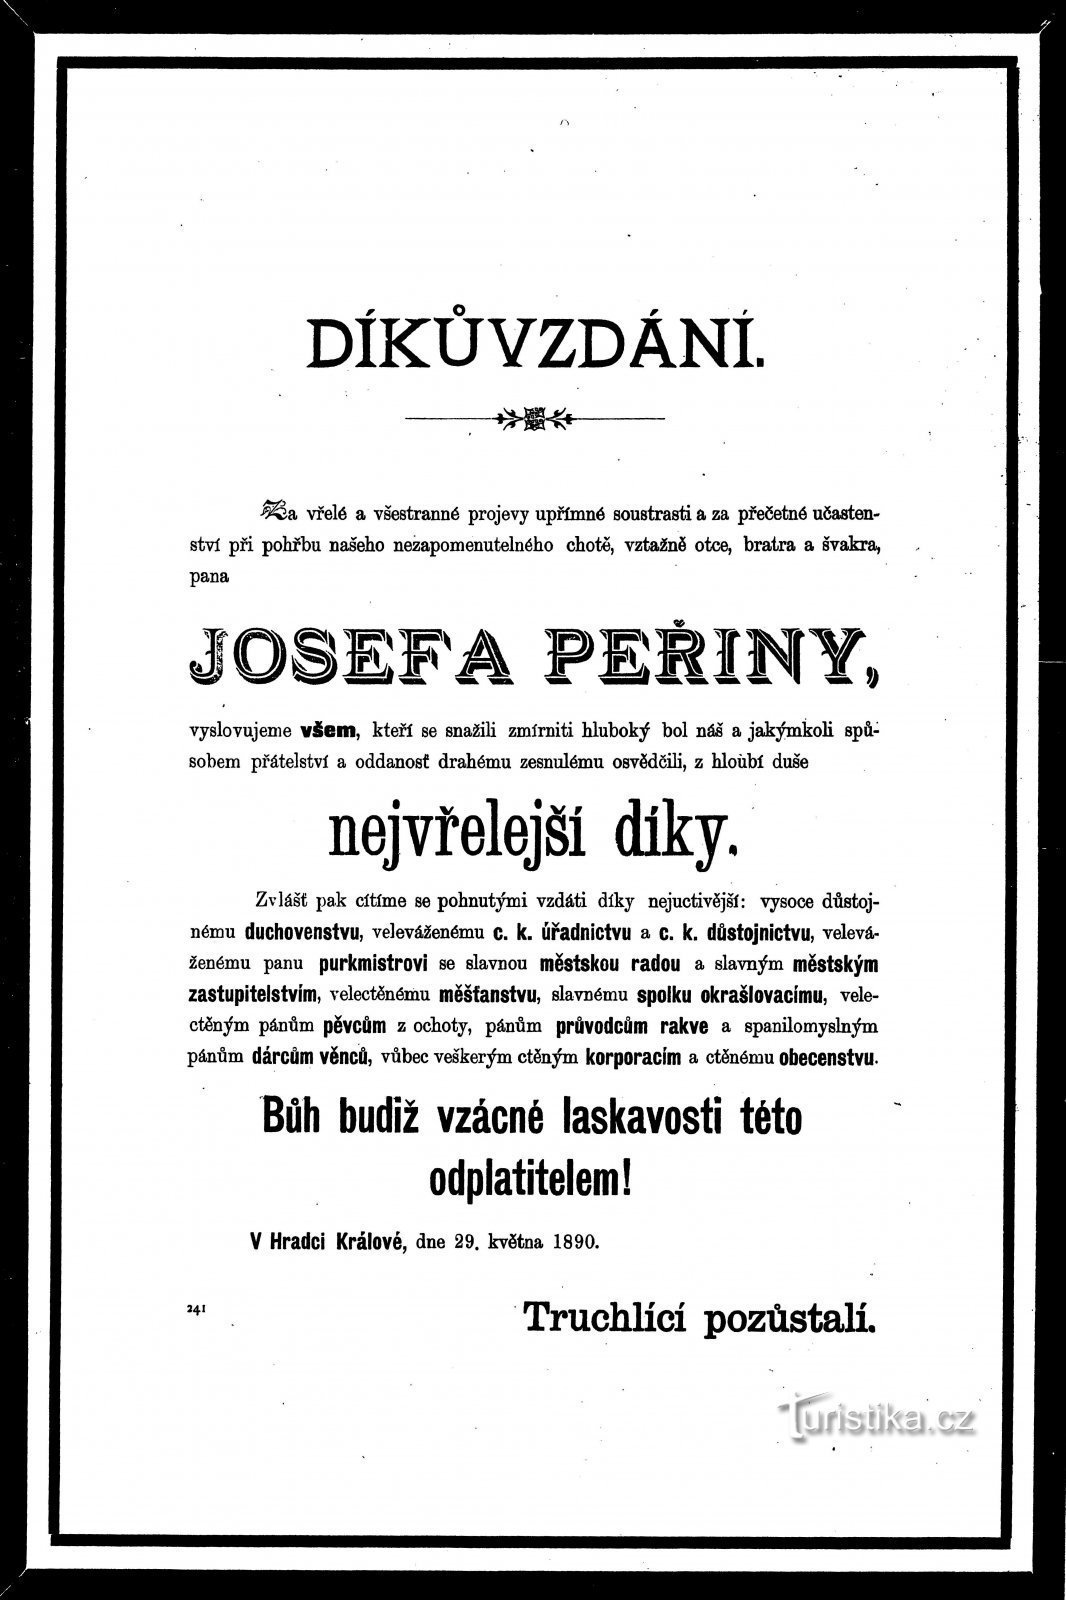 Vă mulțumim pentru participarea la înmormântarea lui Josef Peřina din 1890